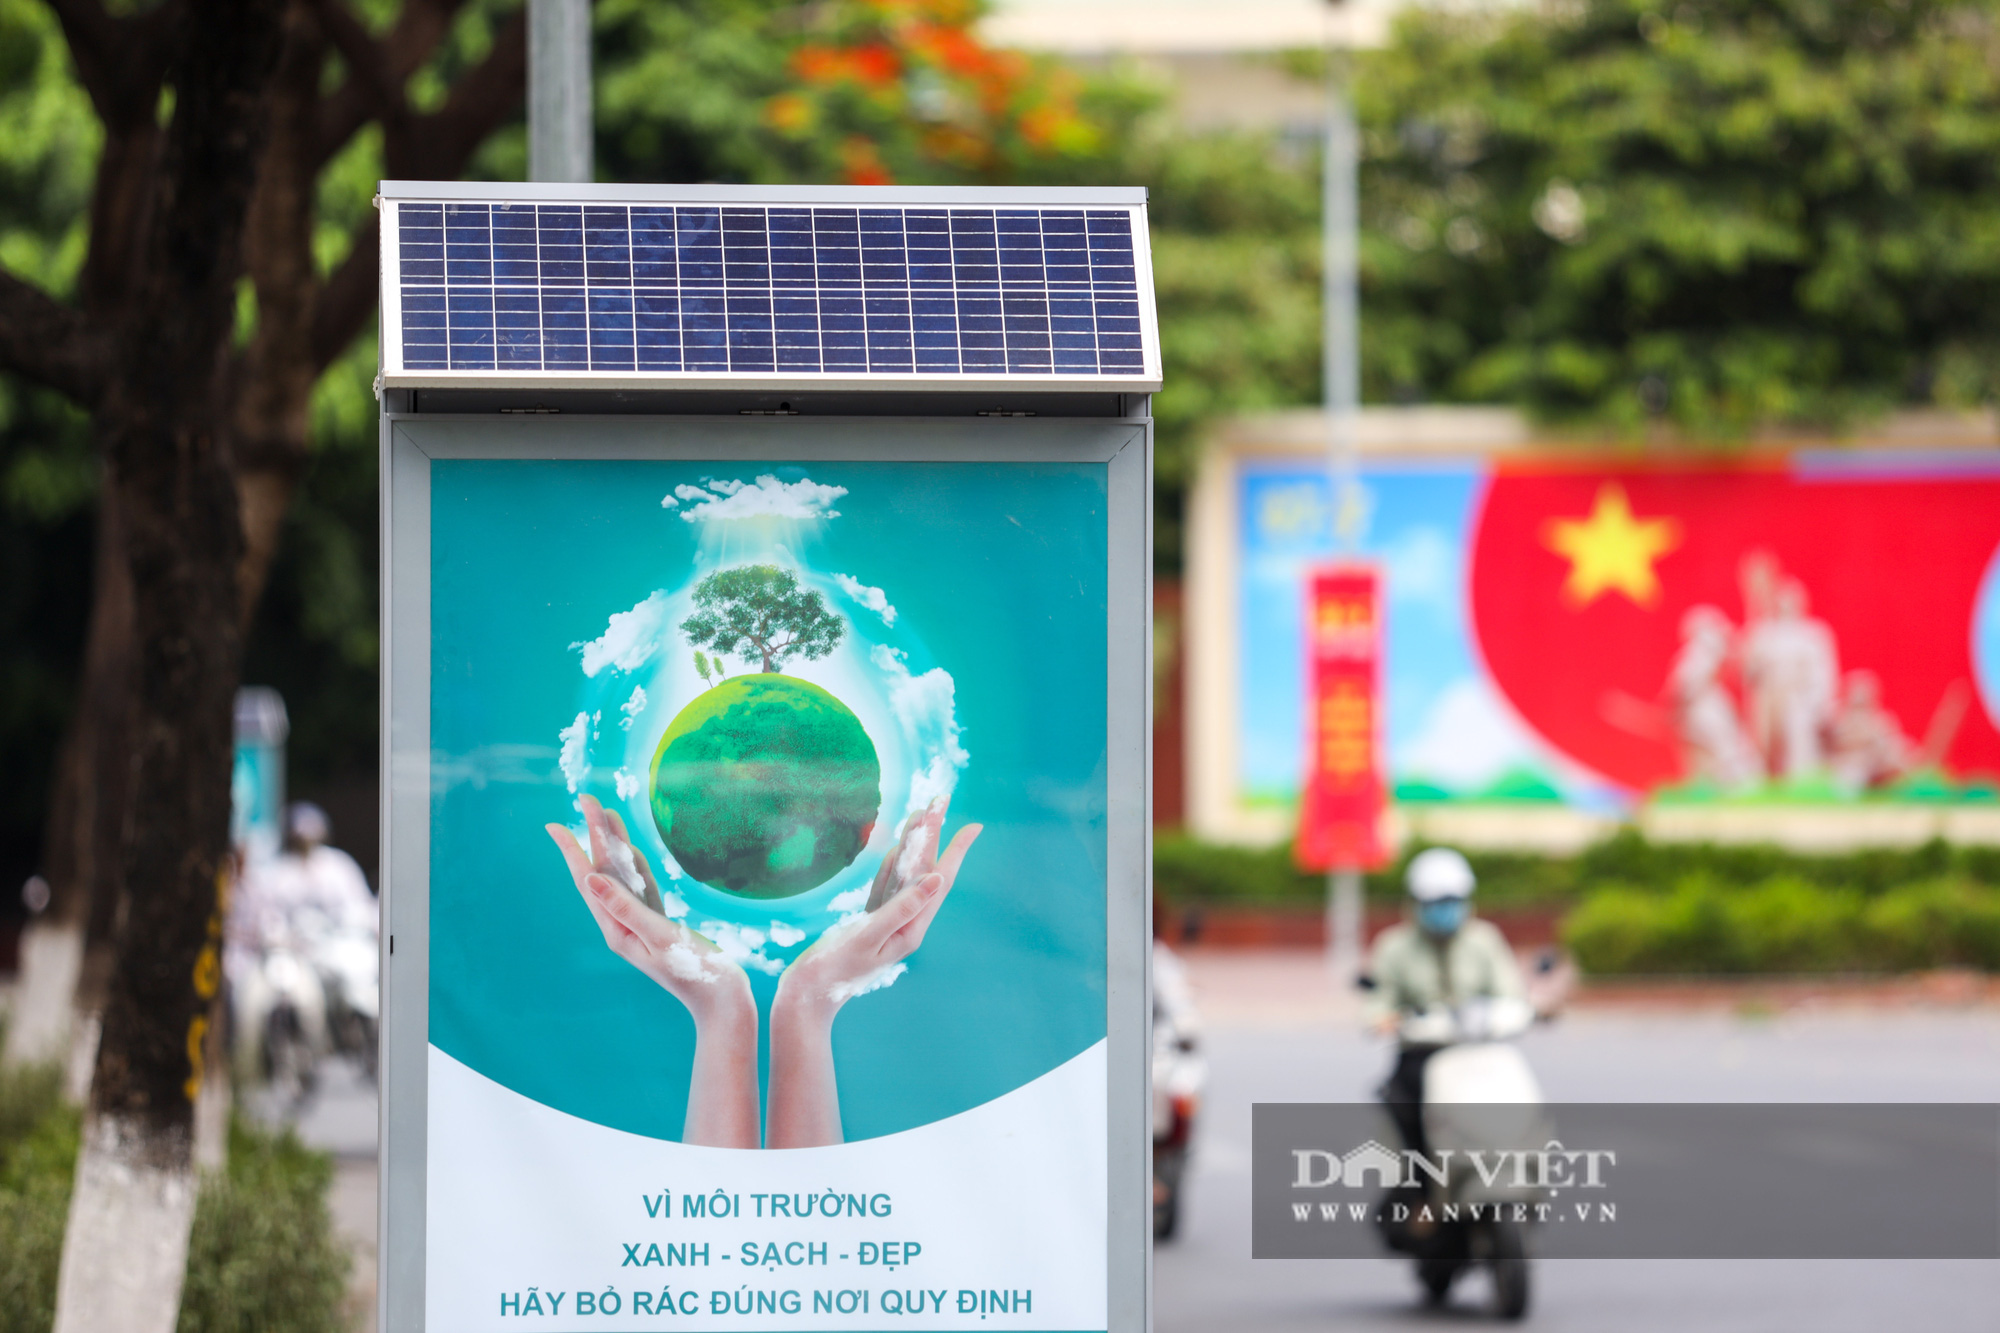 Cận cảnh thùng rác công nghệ có pin mặt trời mới xuất hiện ở Hà Nội - Ảnh 2.